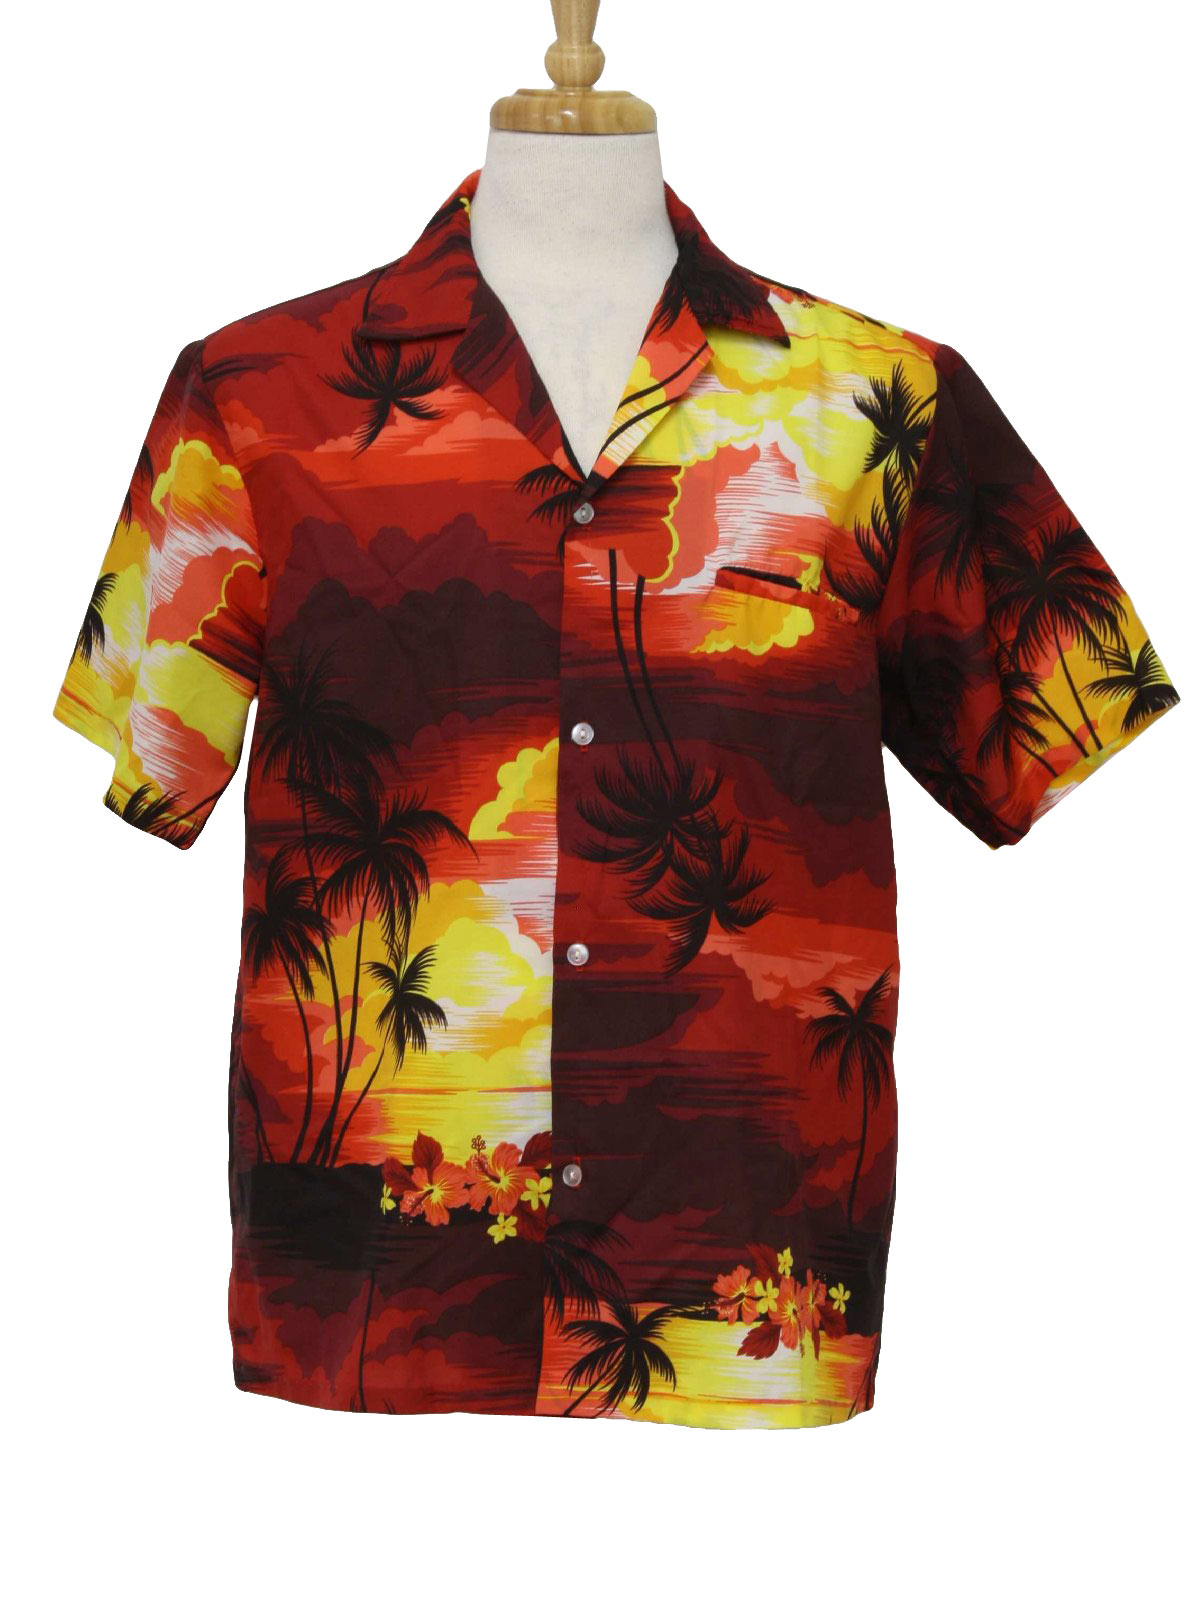 Retro 1980's Hawaiian Shirt (Helenas) : Early 80s -Helenas- Mens shades ...